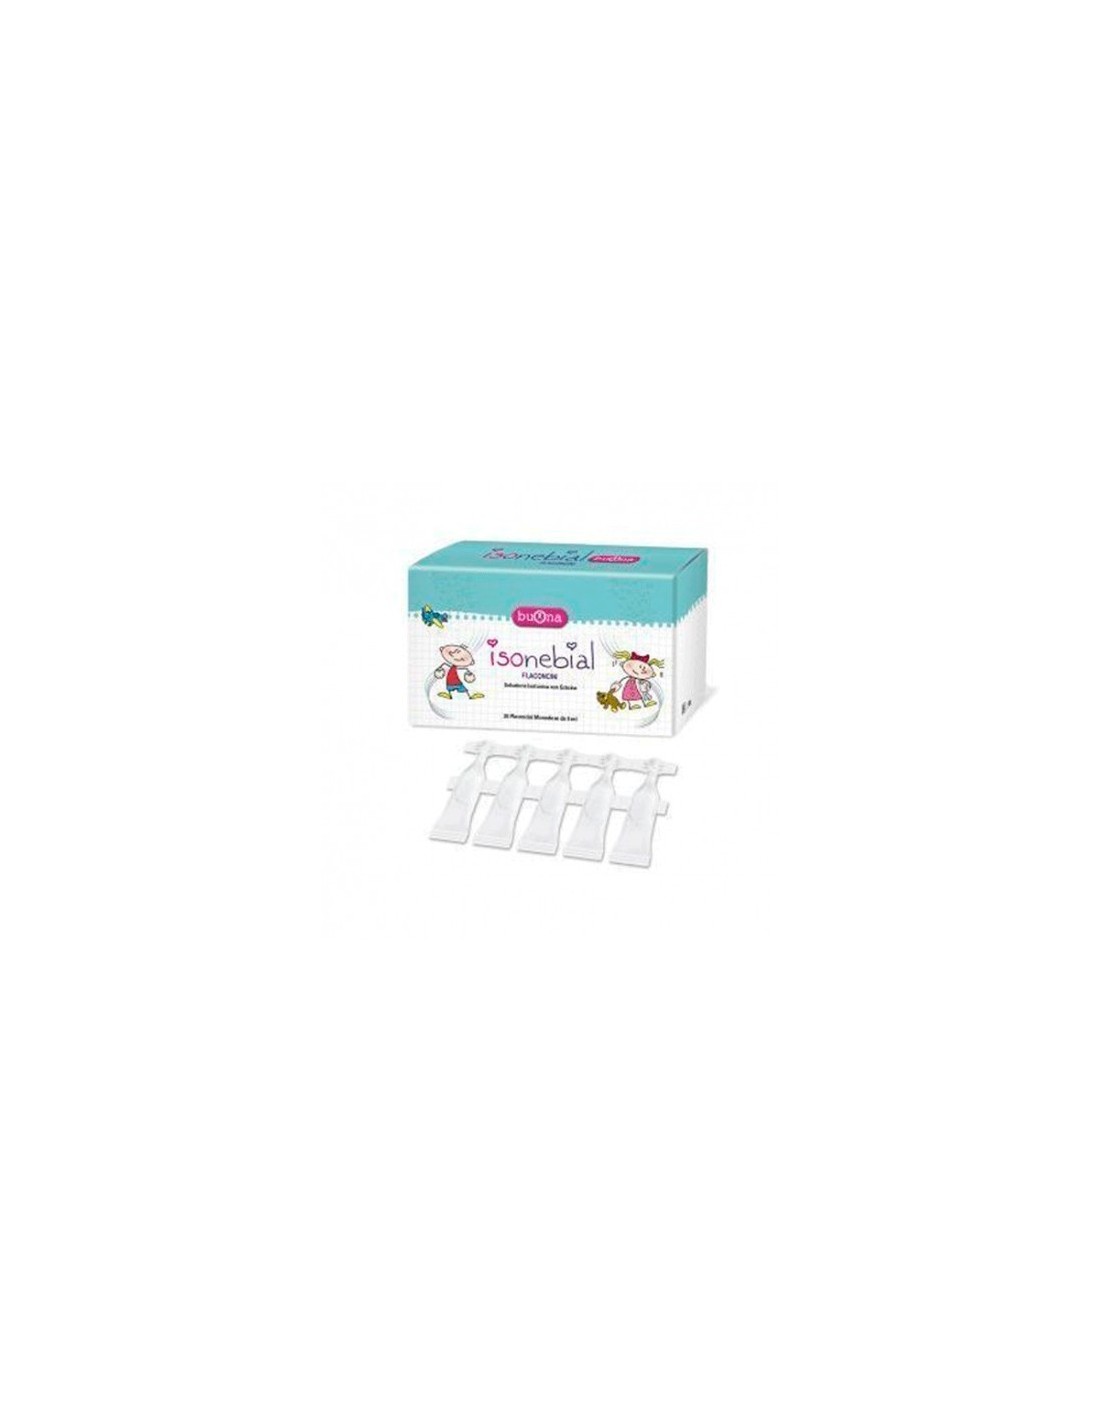 Farmacia Fuentelucha | Buona Nebianax Iso Kit 20 viales